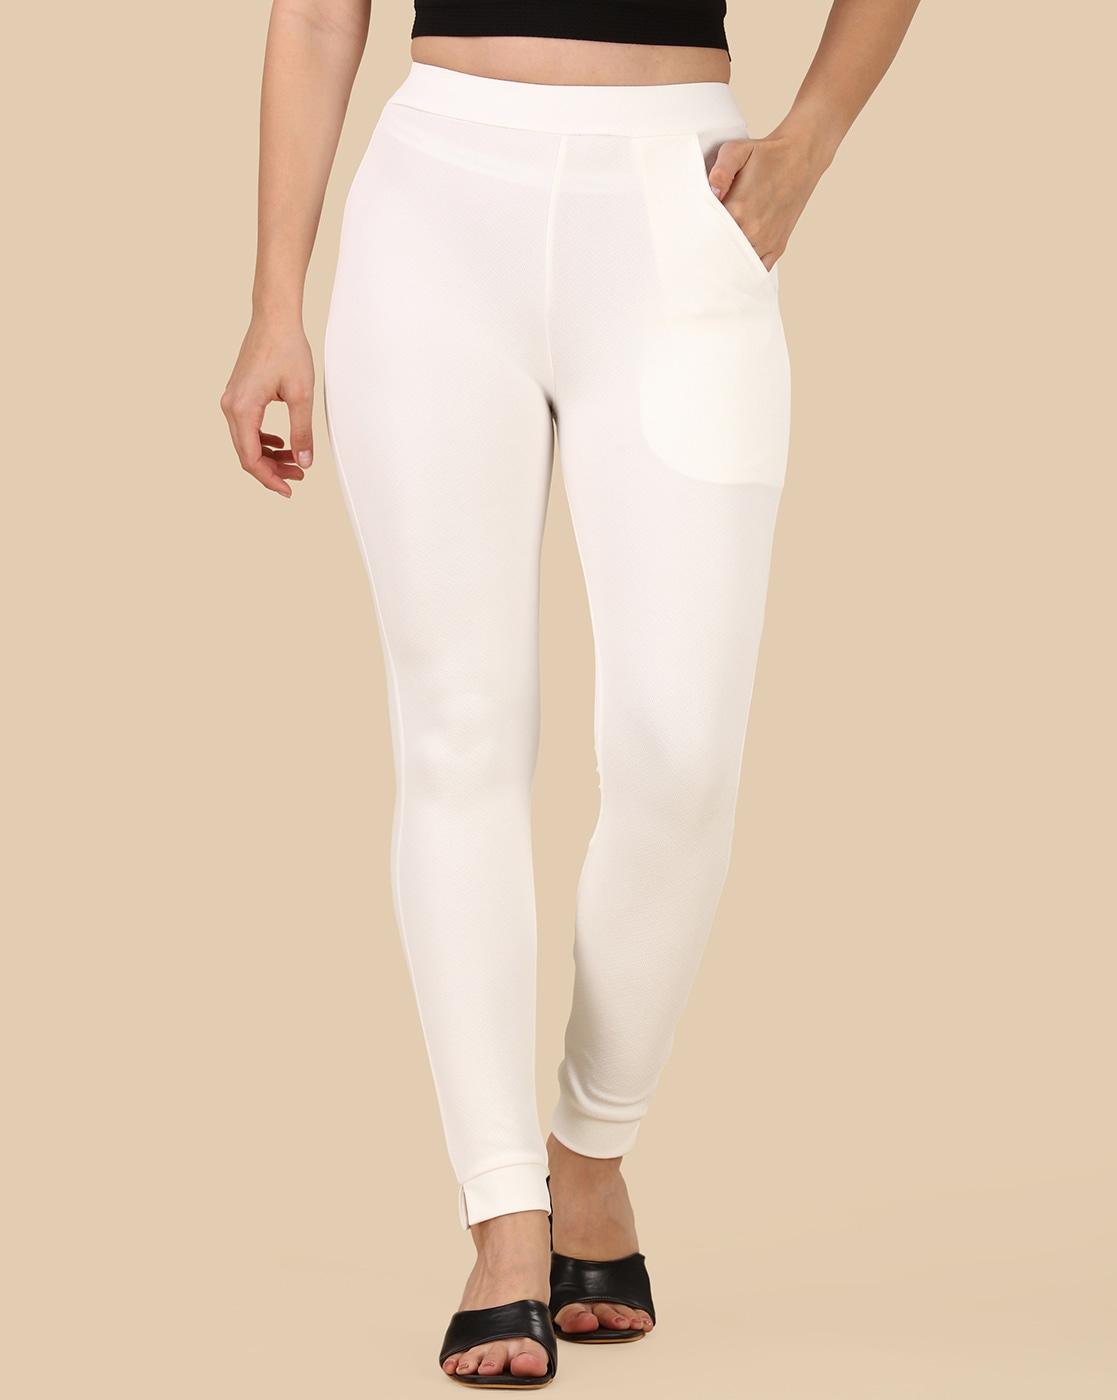 Buy White Trousers  Pants for Women by TALLY WEiJL Online  Ajiocom